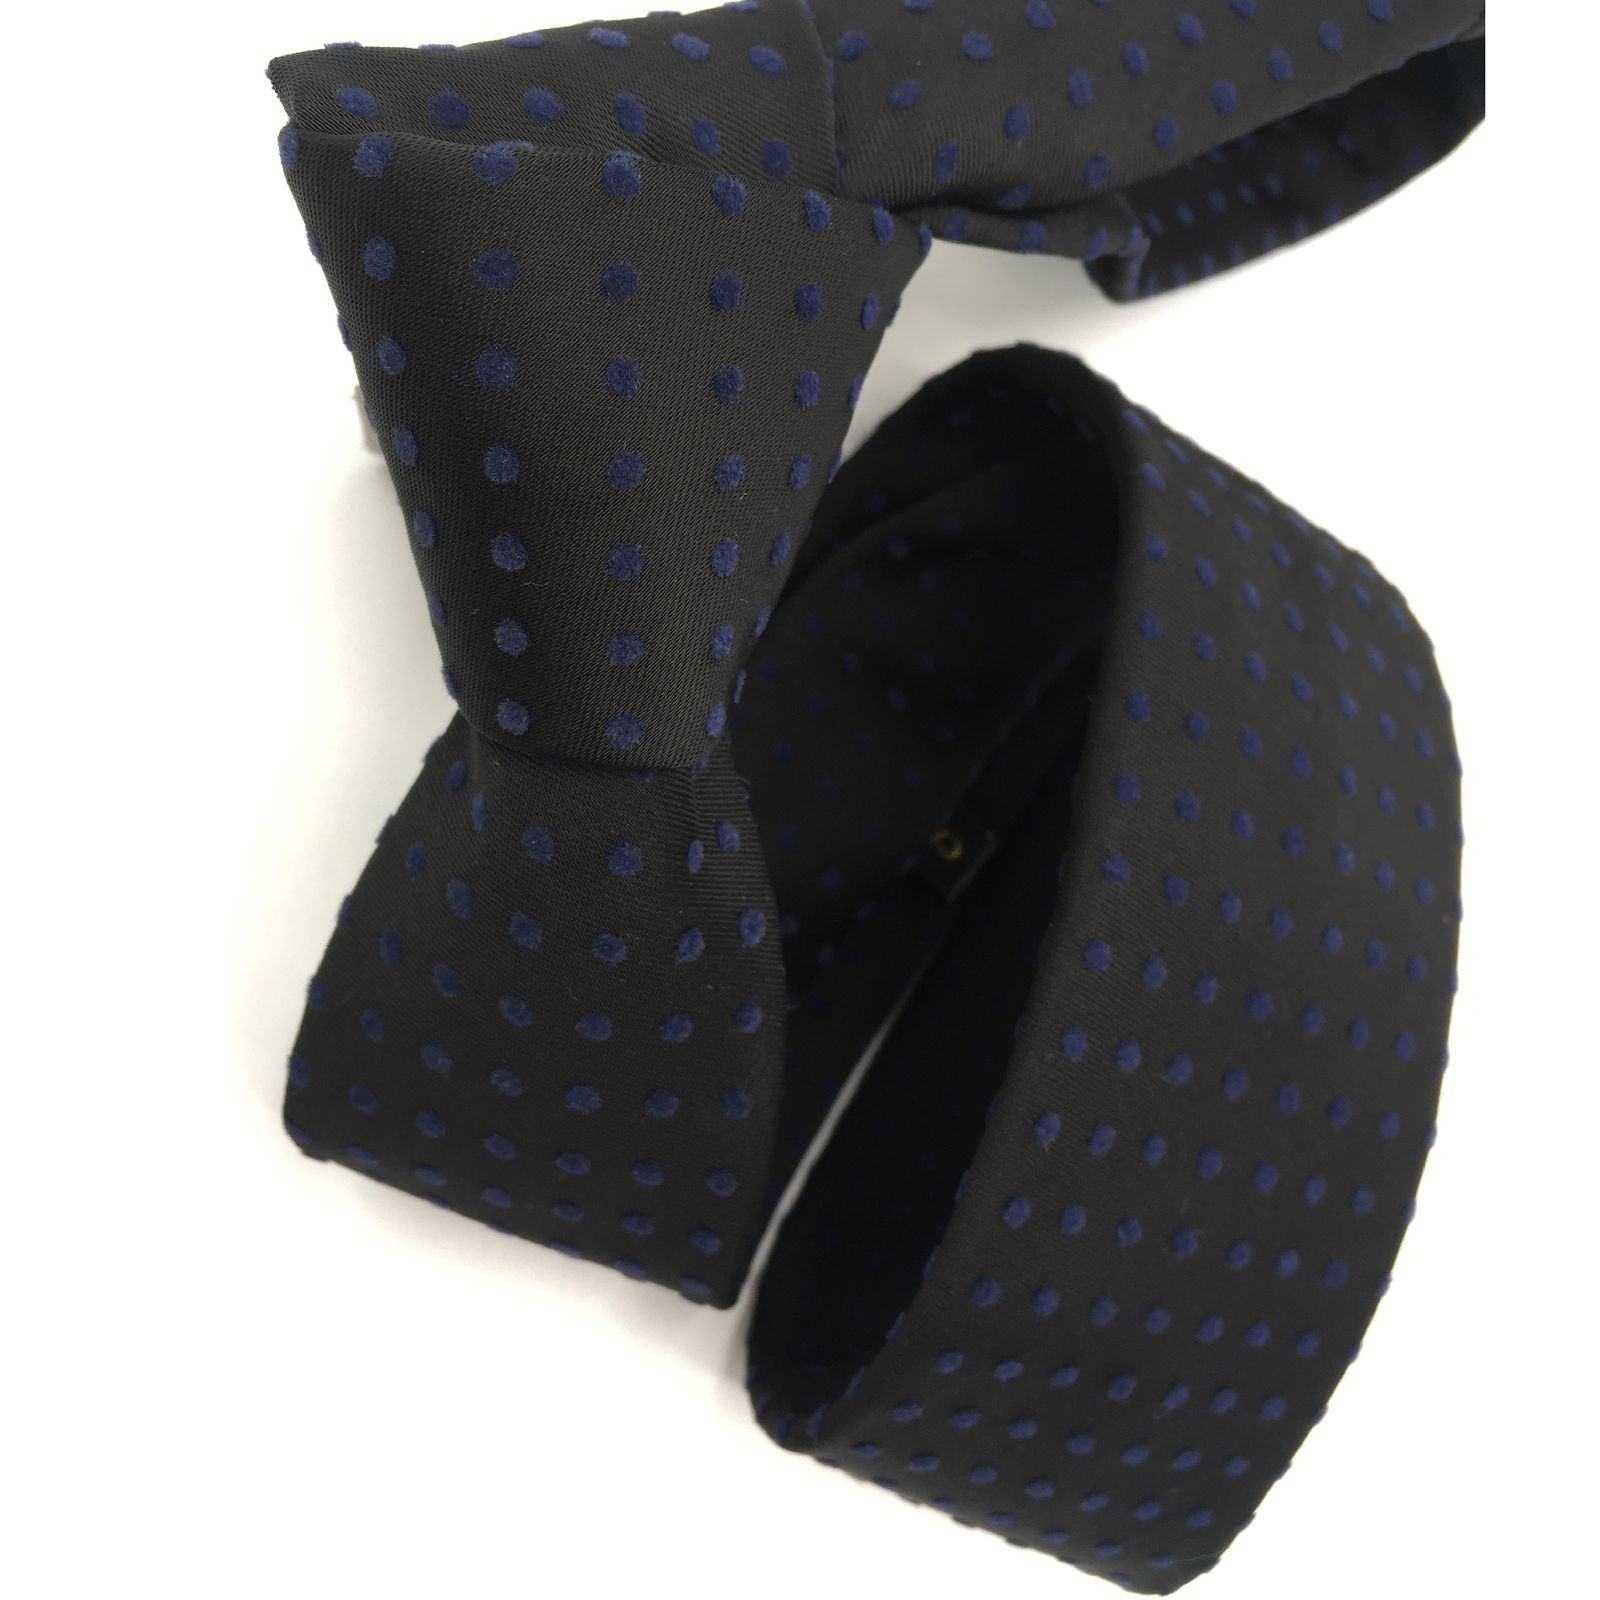  کراوات مردانه هکس ایران مدل KT-BK NQT -  - 3